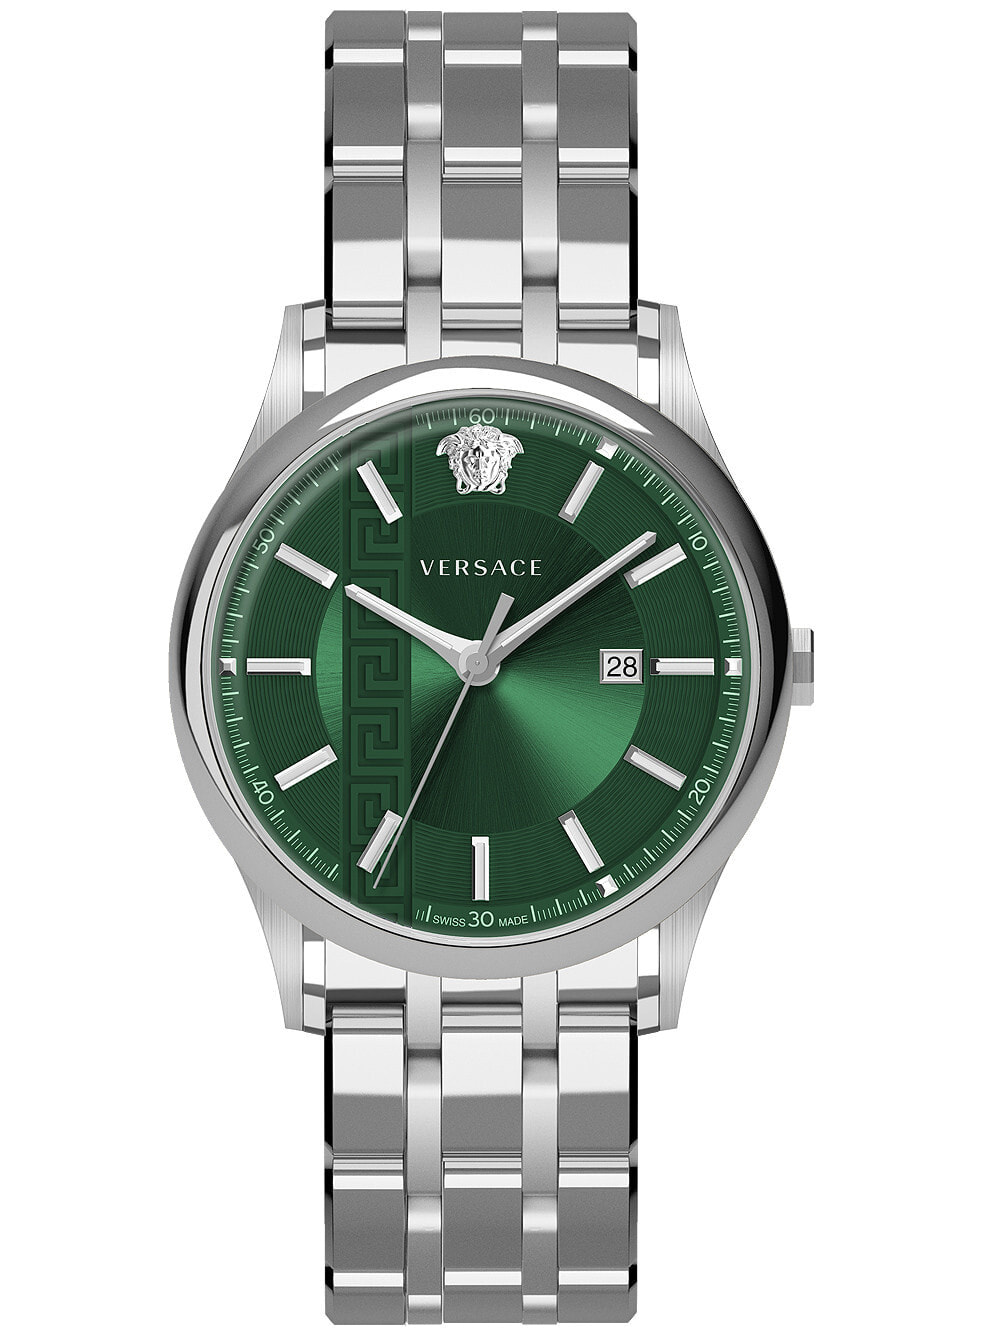 Мужские наручные часы с серебряным браслетом Versace VE4A00620 Aiakos mens 44mm 5ATM